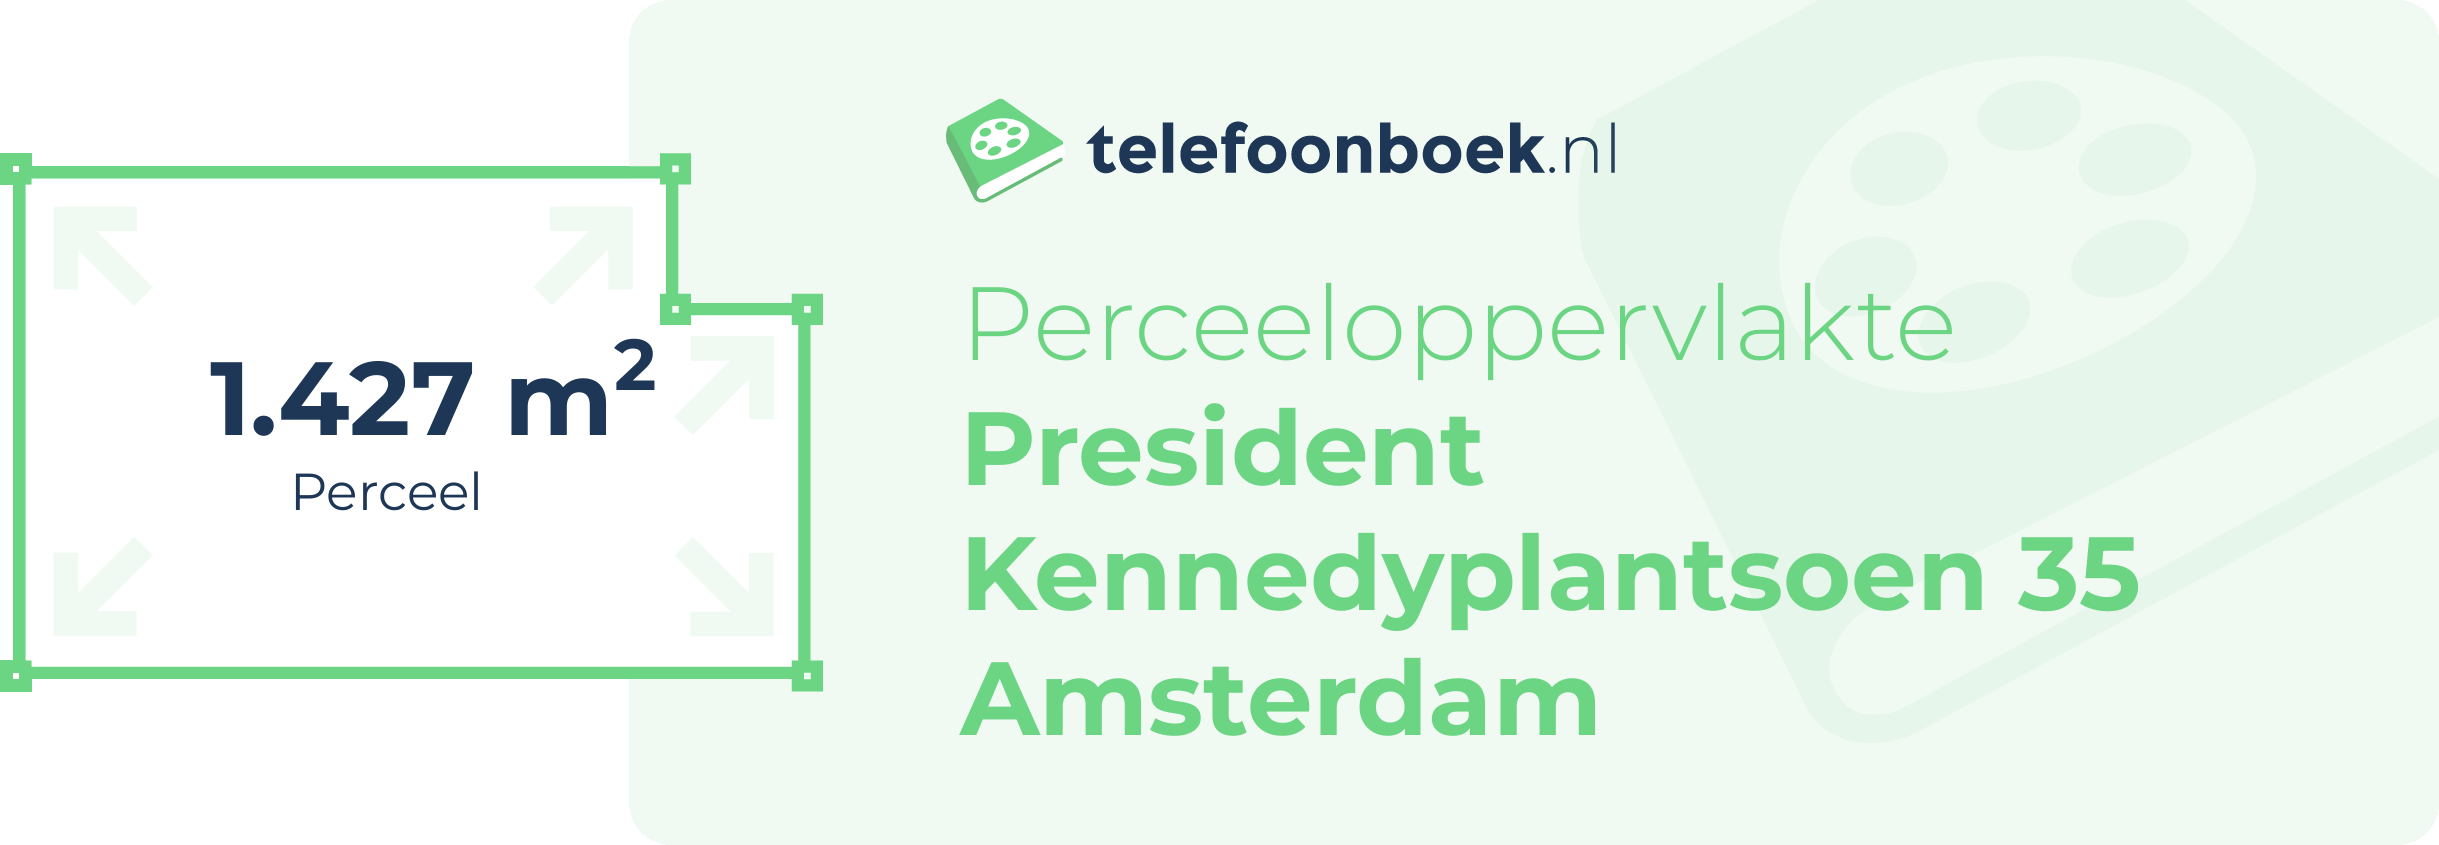 Perceeloppervlakte President Kennedyplantsoen 35 Amsterdam